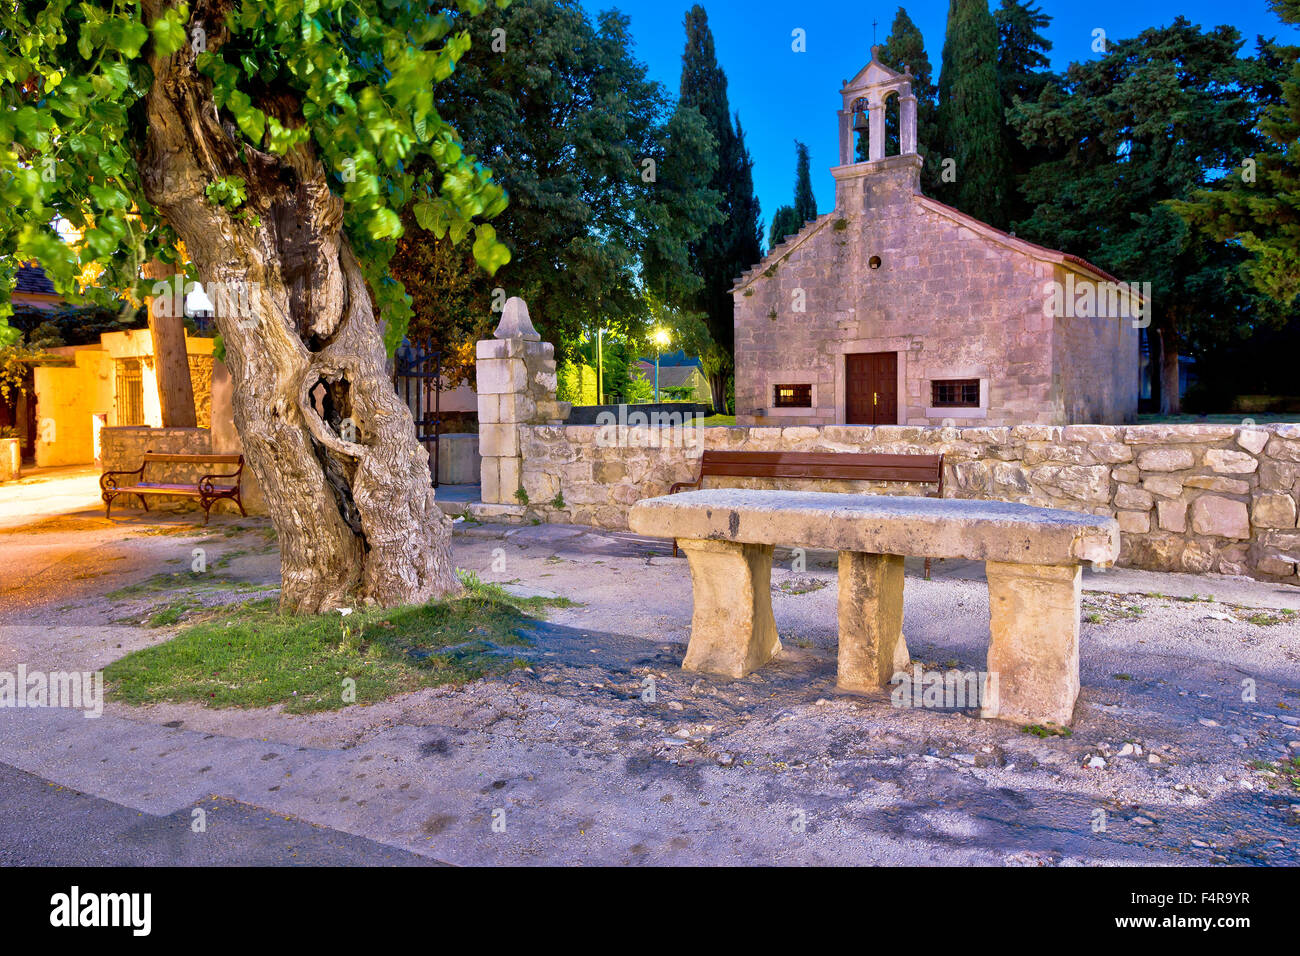 Sukosan dalmatian village historic stone church and architecture evening view, Dalmatia, Croatia Stock Photo